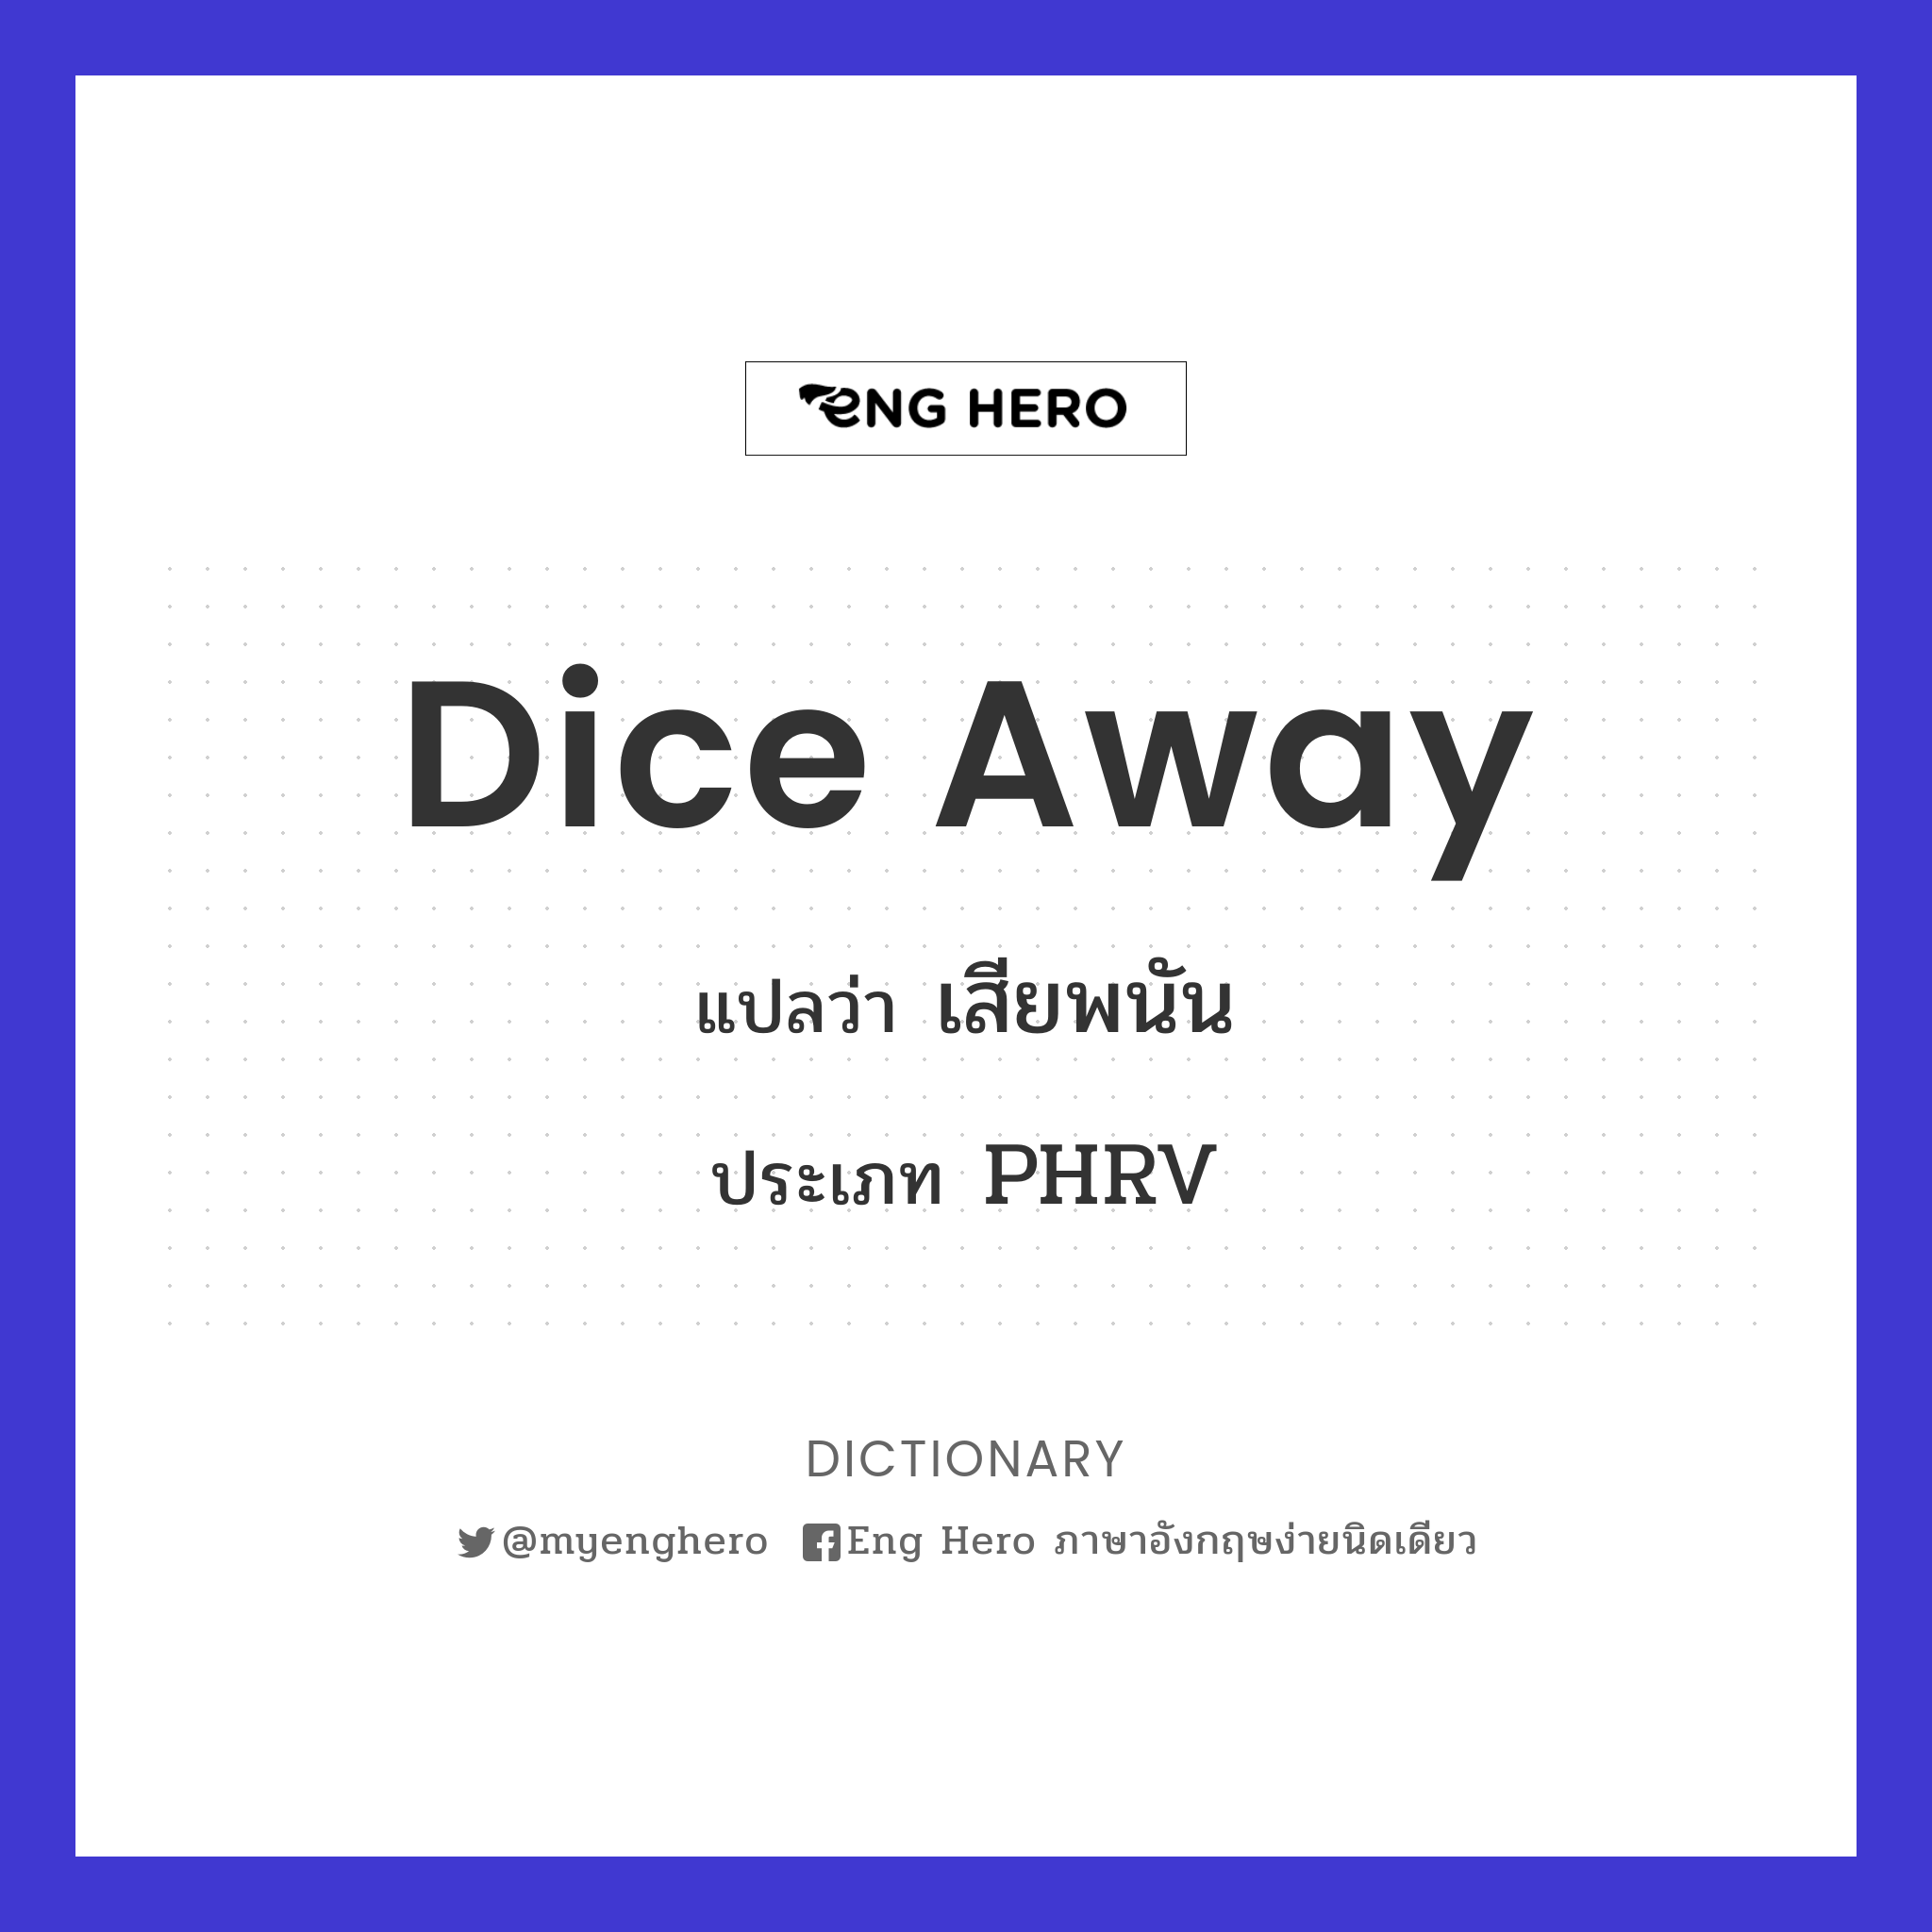 dice away